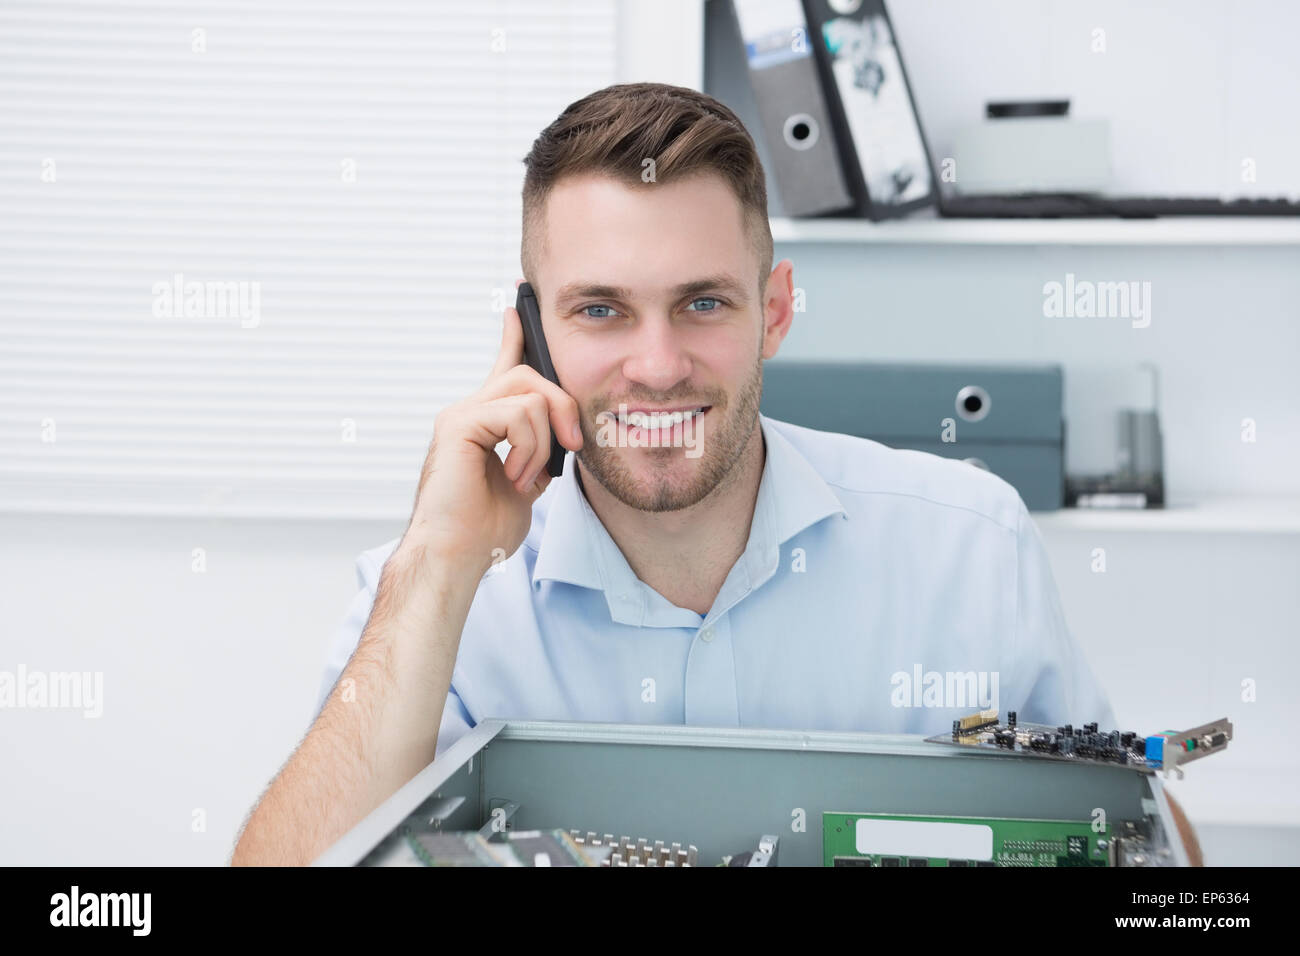 Portrait of smiling computer engineer sur appel en face de cpu ouvert Banque D'Images